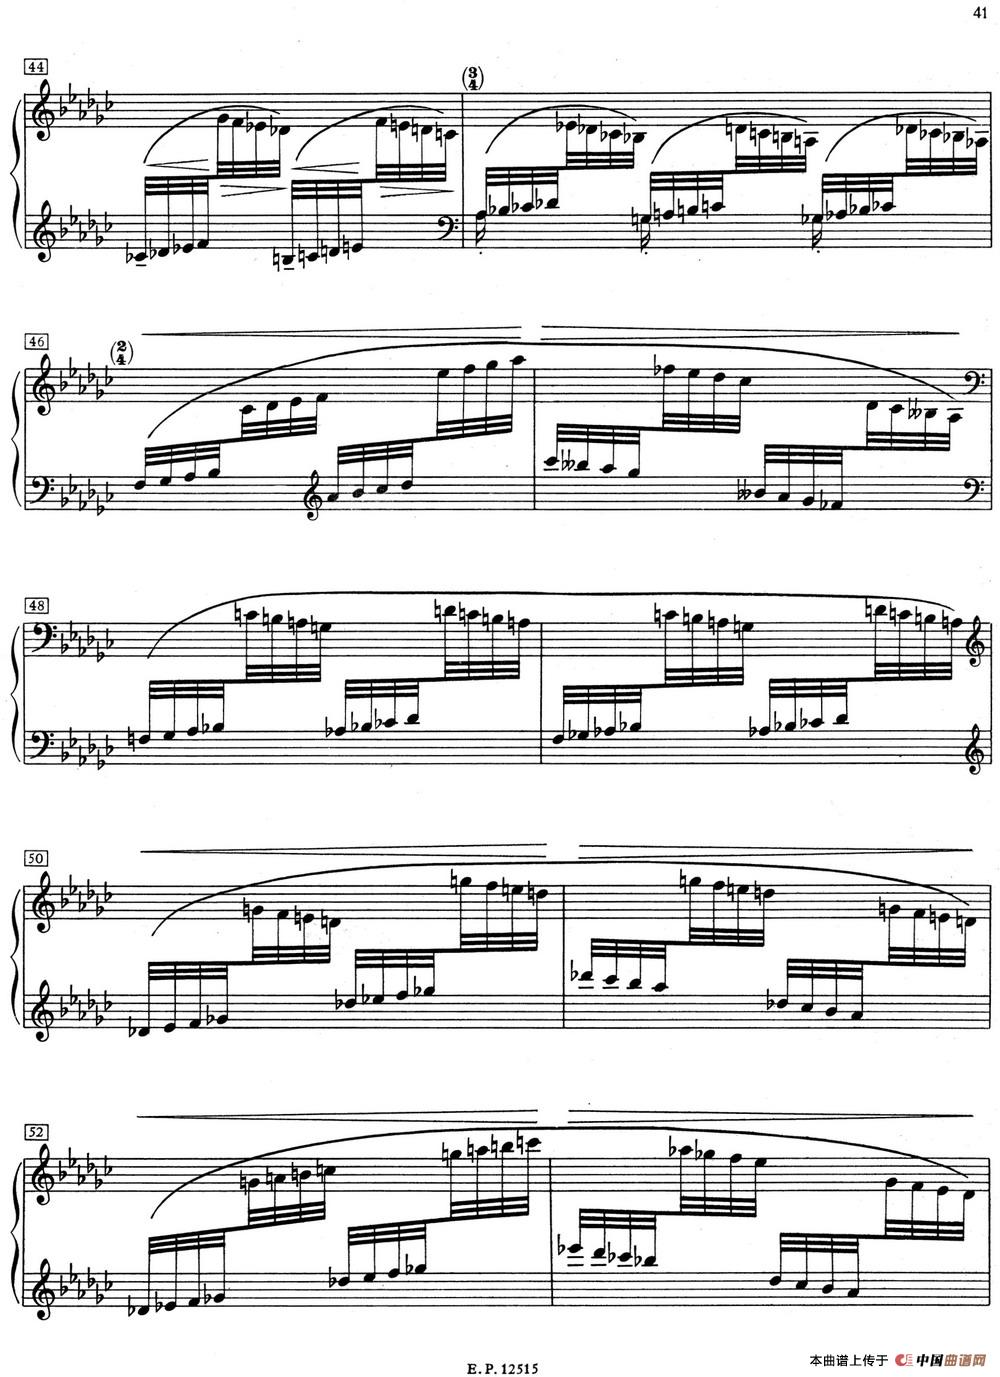 德彪西12首钢琴练习曲（6 八指练习v1.0 huit doigts）(1)_6 Pour les huit doigts_页面_5.jpg